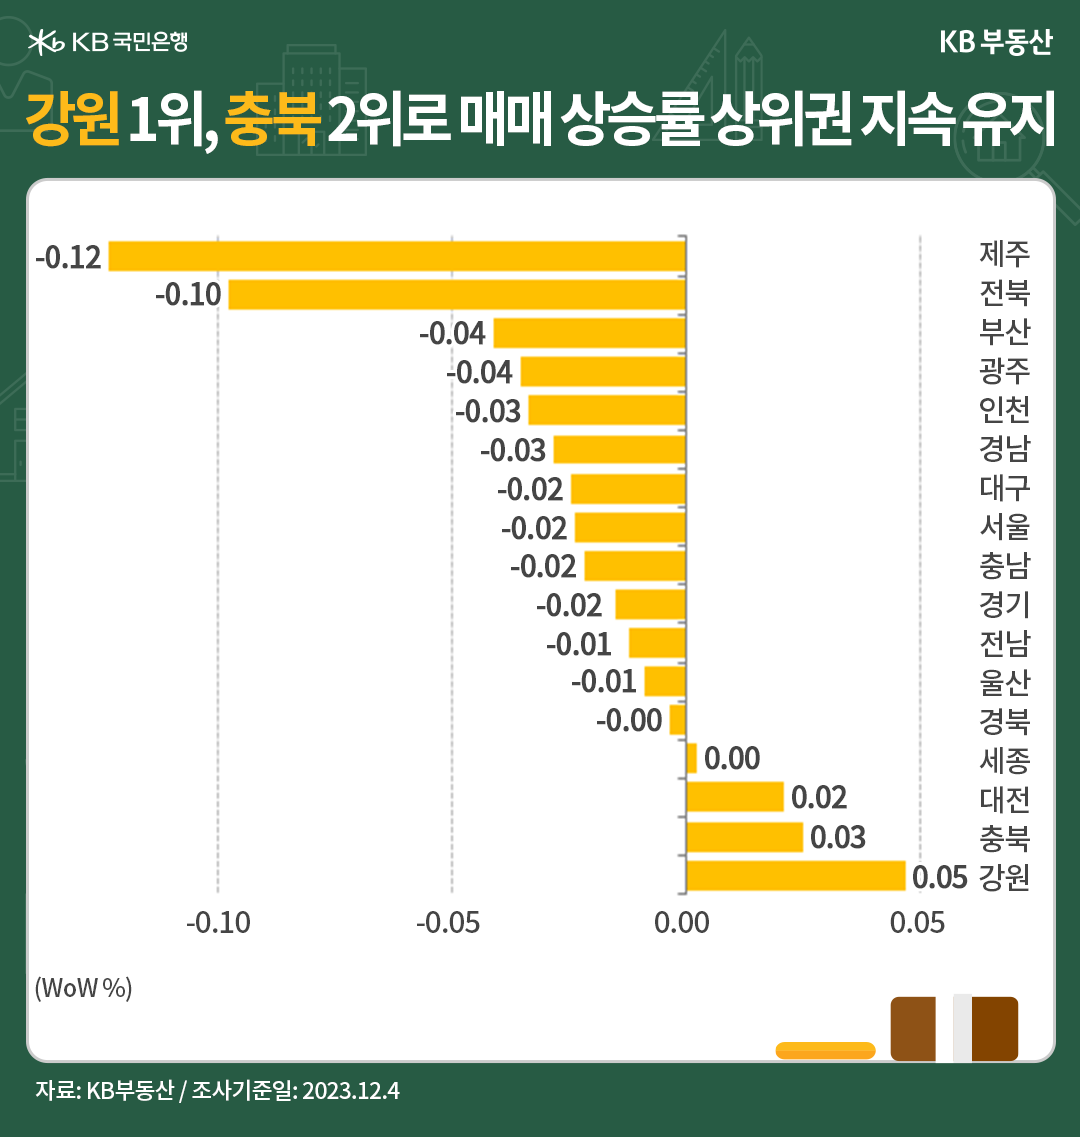 전국 권역별 매매가격의 전주 대비 증감률을 표현한 막대 그래프. 강원과 충북이 나란히 1,2위를 차지하고 있다.